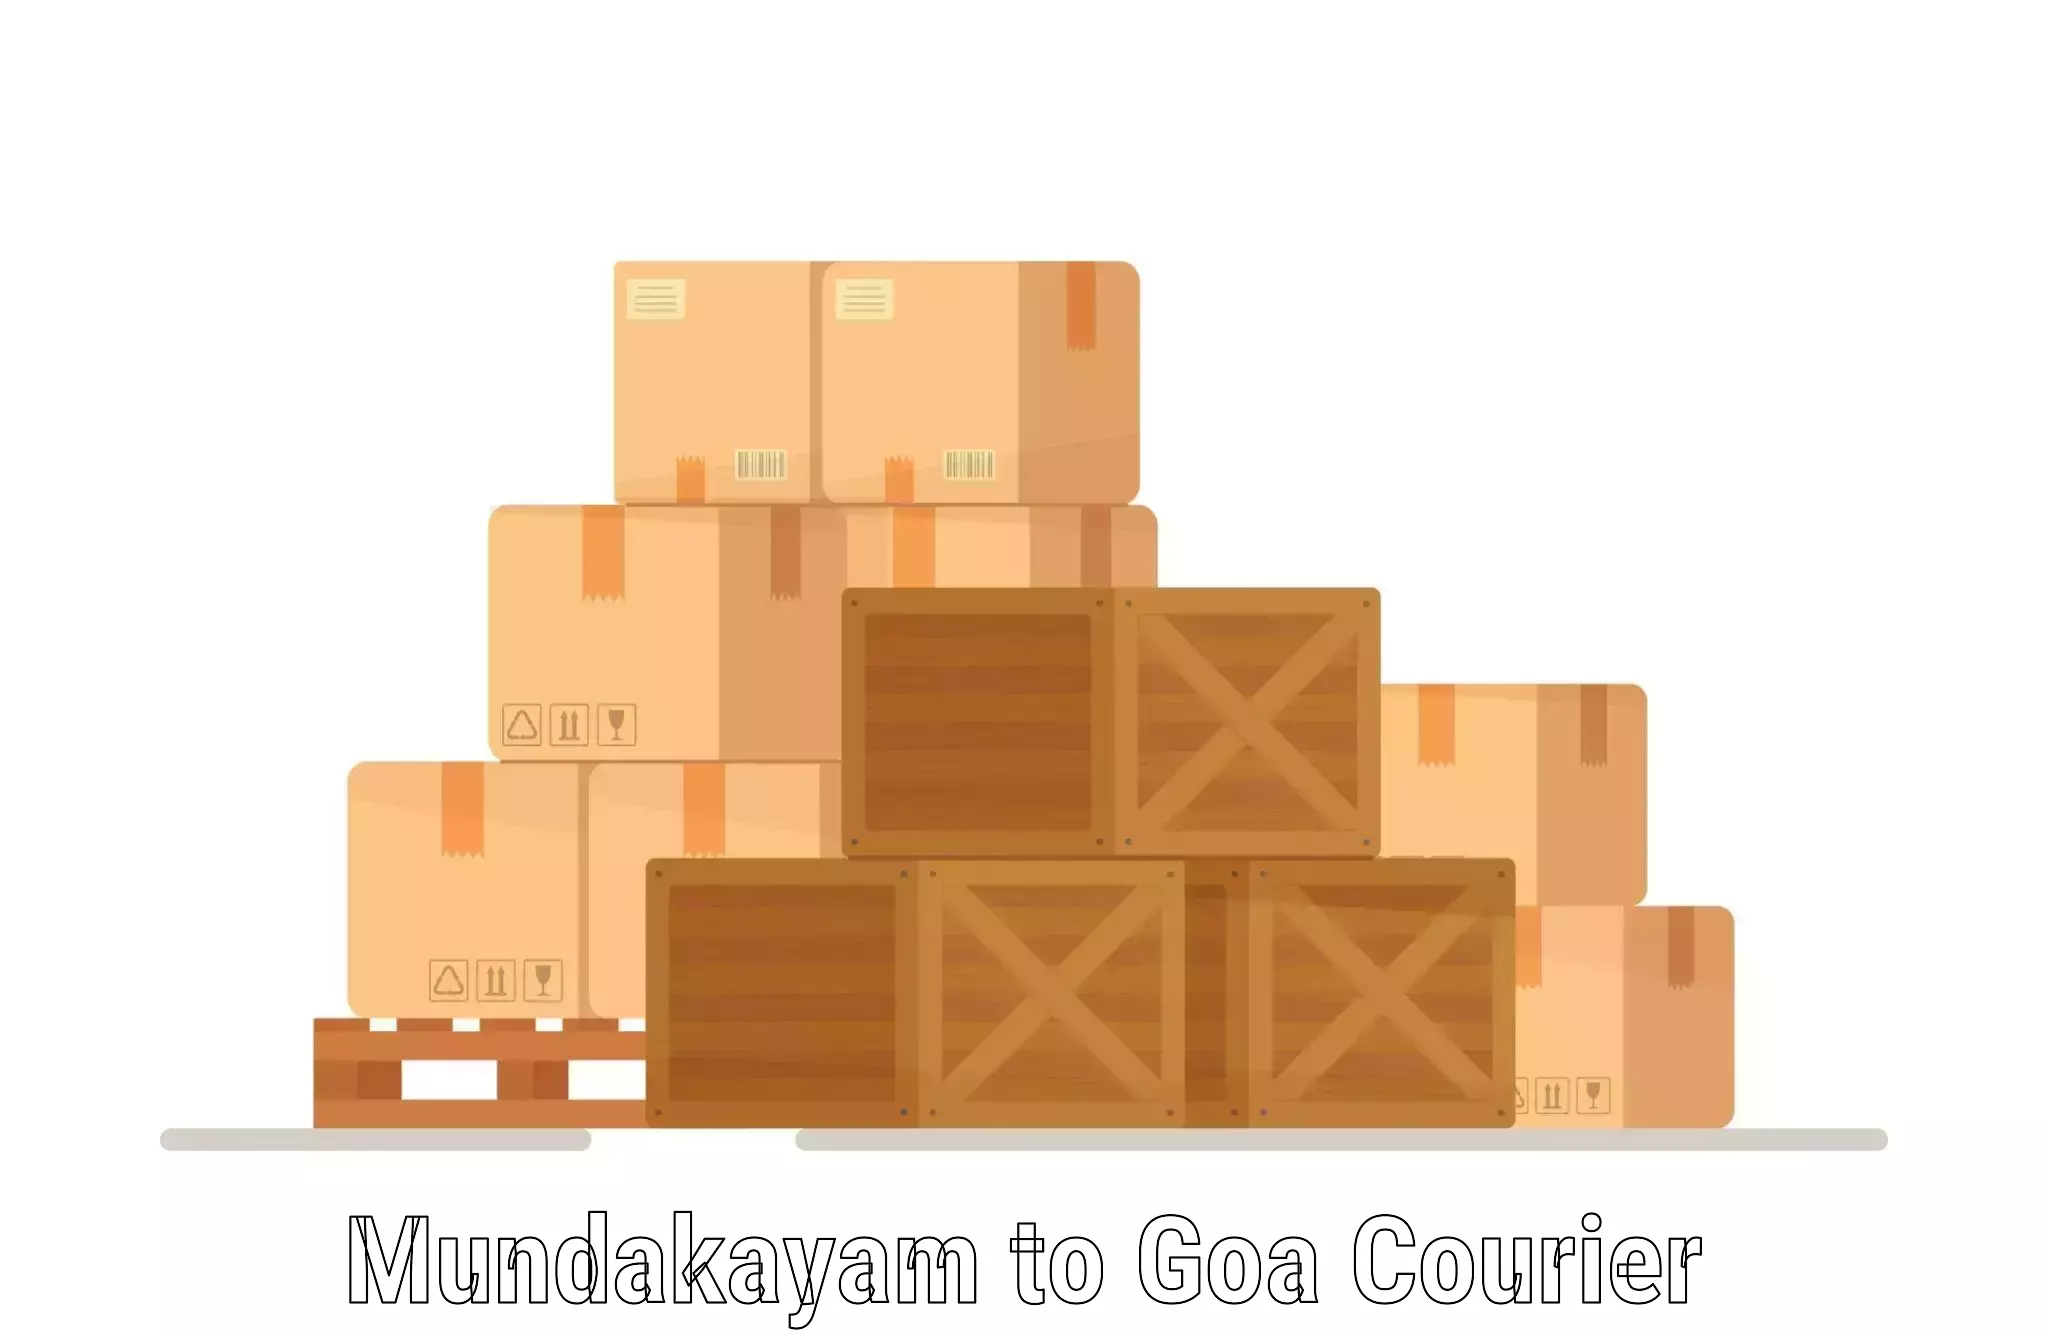 Multi-national courier services Mundakayam to Goa